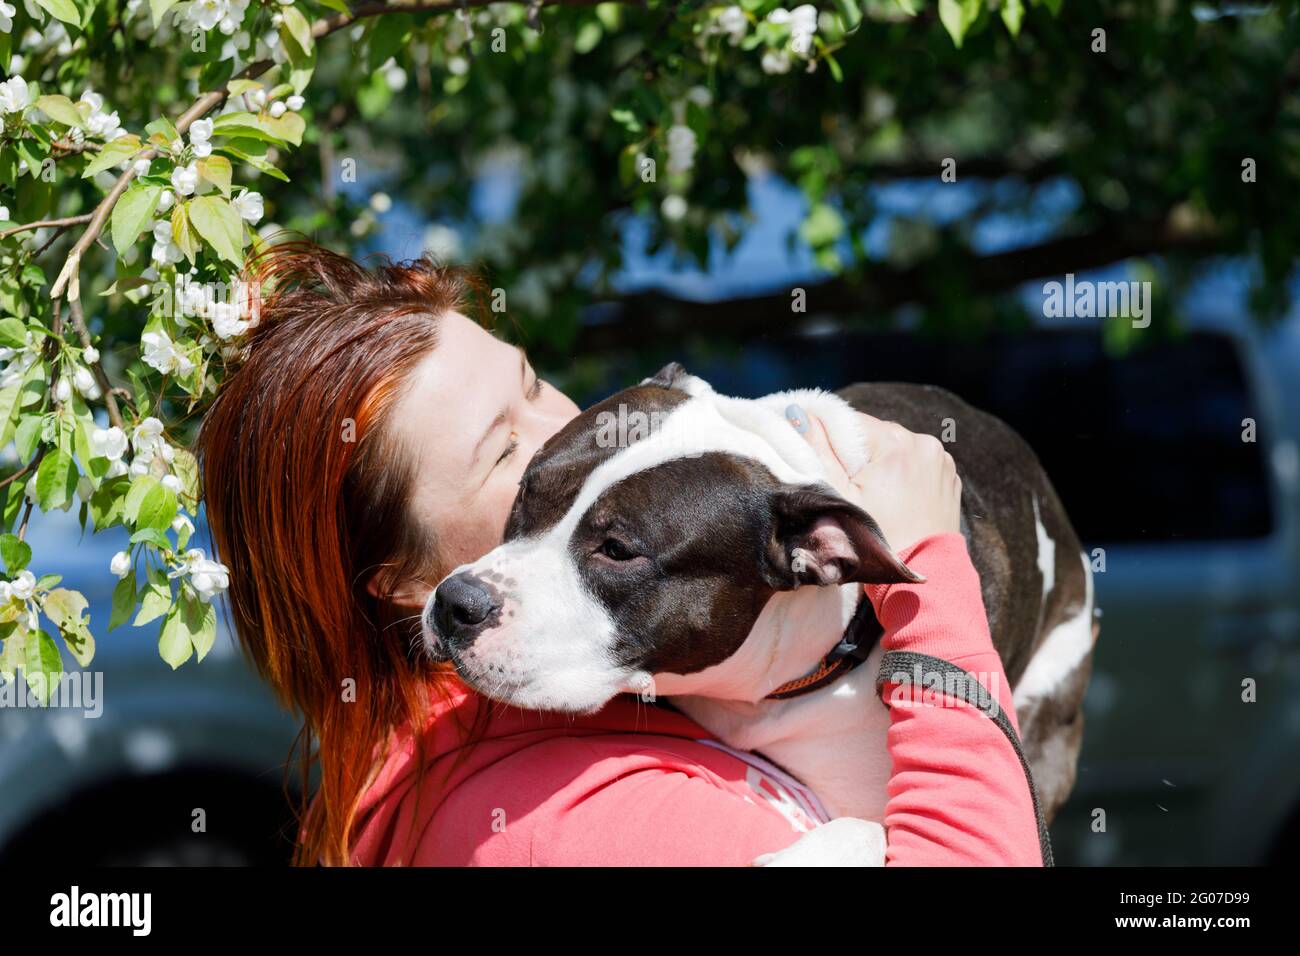 Russia. Vyborg. 05.20.2021 ragazza con il cane tra le braccia. Razza americana Staffordshire Terrier. Foto di alta qualità Foto Stock